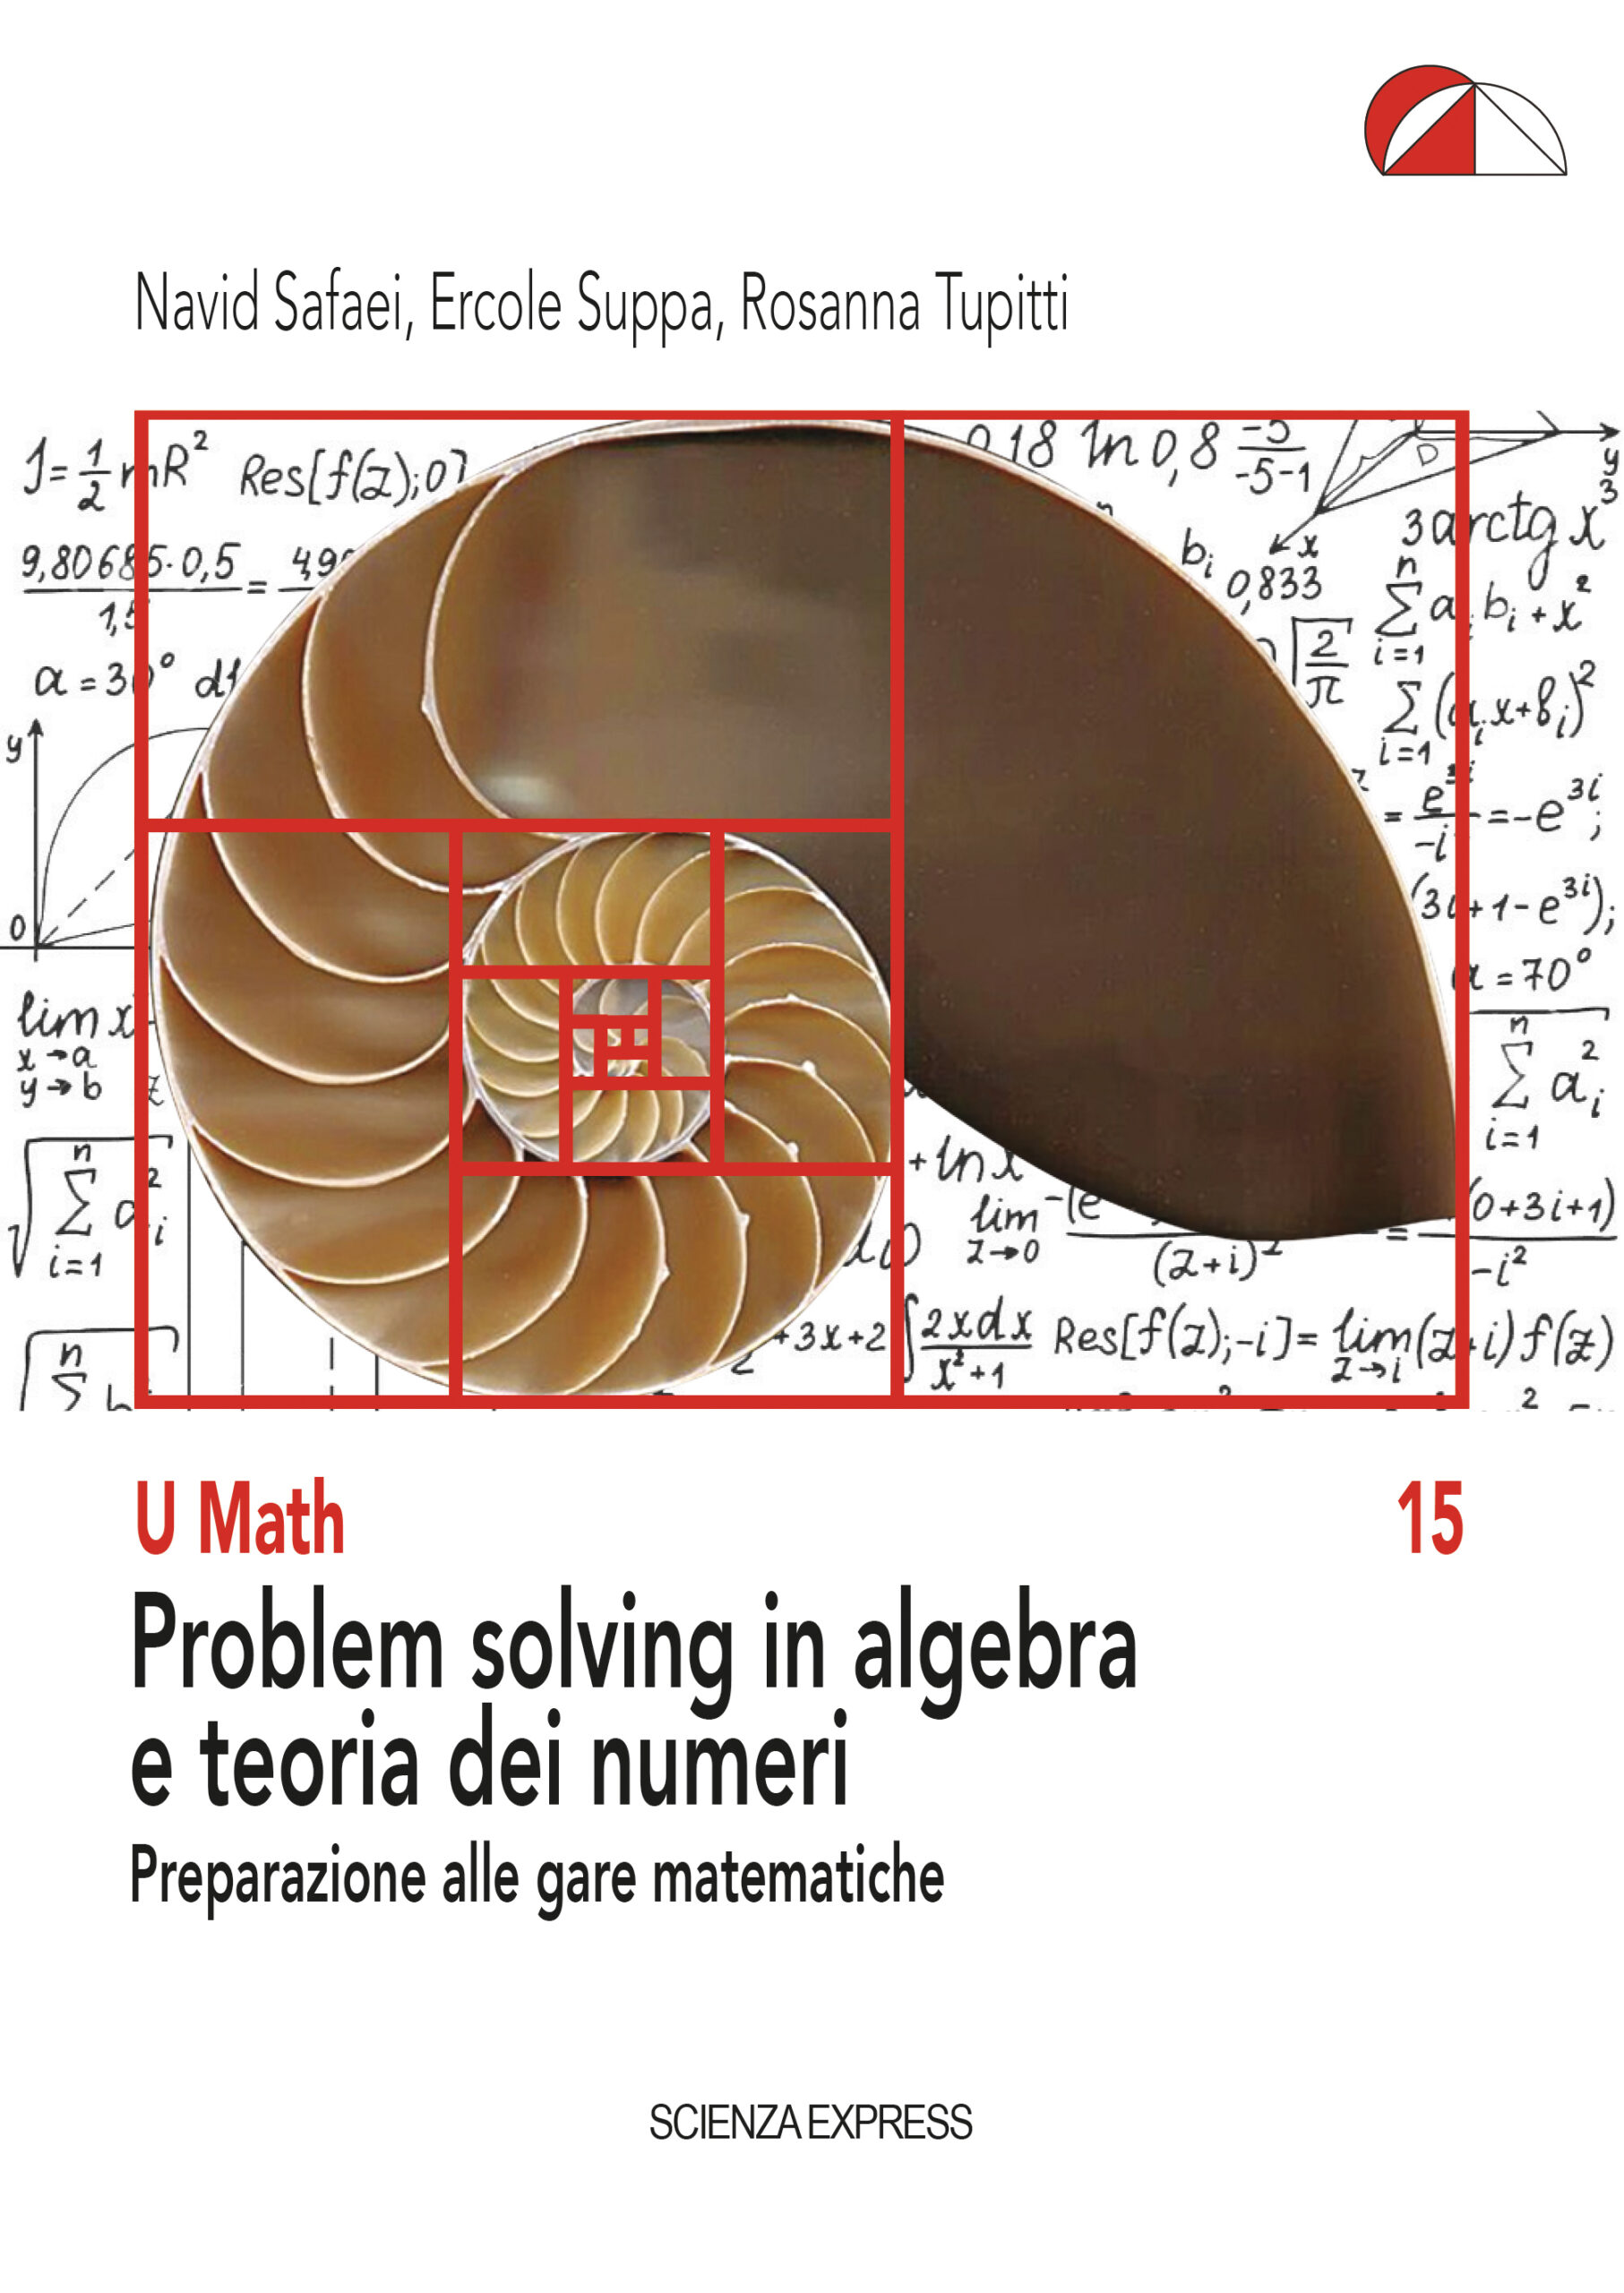 problem solving in algebra e teoria dei numeri